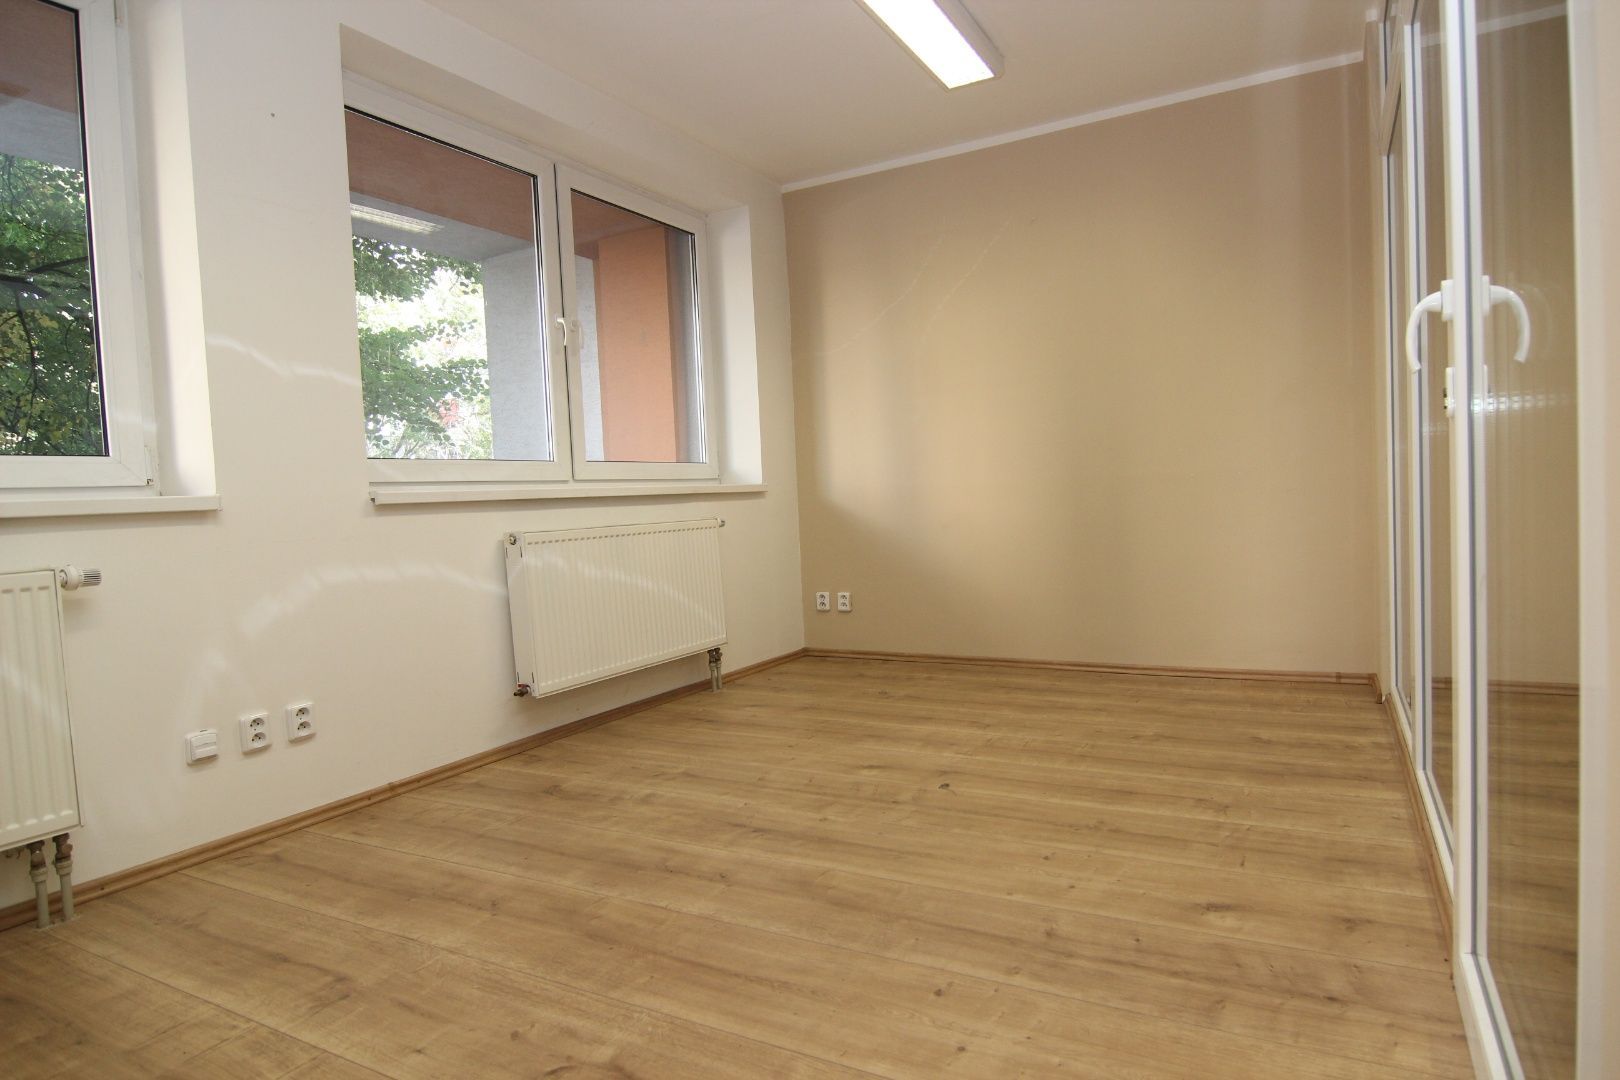 Predaj pekných kancelárskych priestorov v novostavbe s vlastnou terasou vo výbornej lokalite, Komárnická ul.